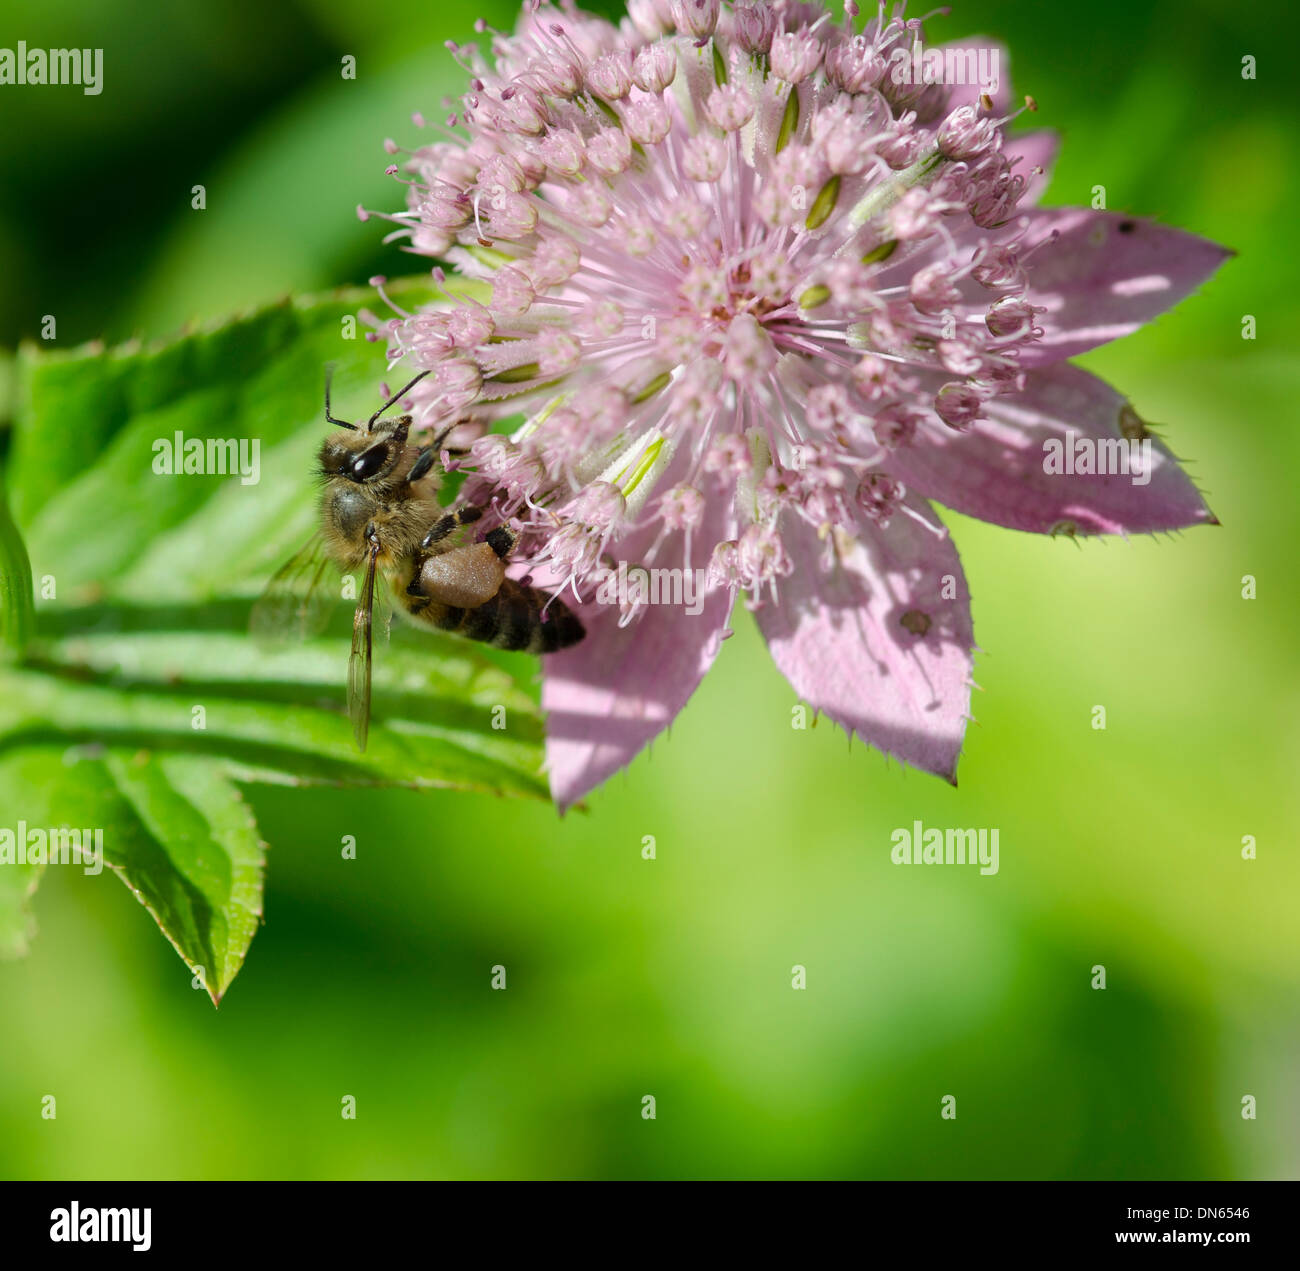 Eine fleißige Biene sammelt Nektar aus einer rosa Blume in einem Garten. Stockfoto